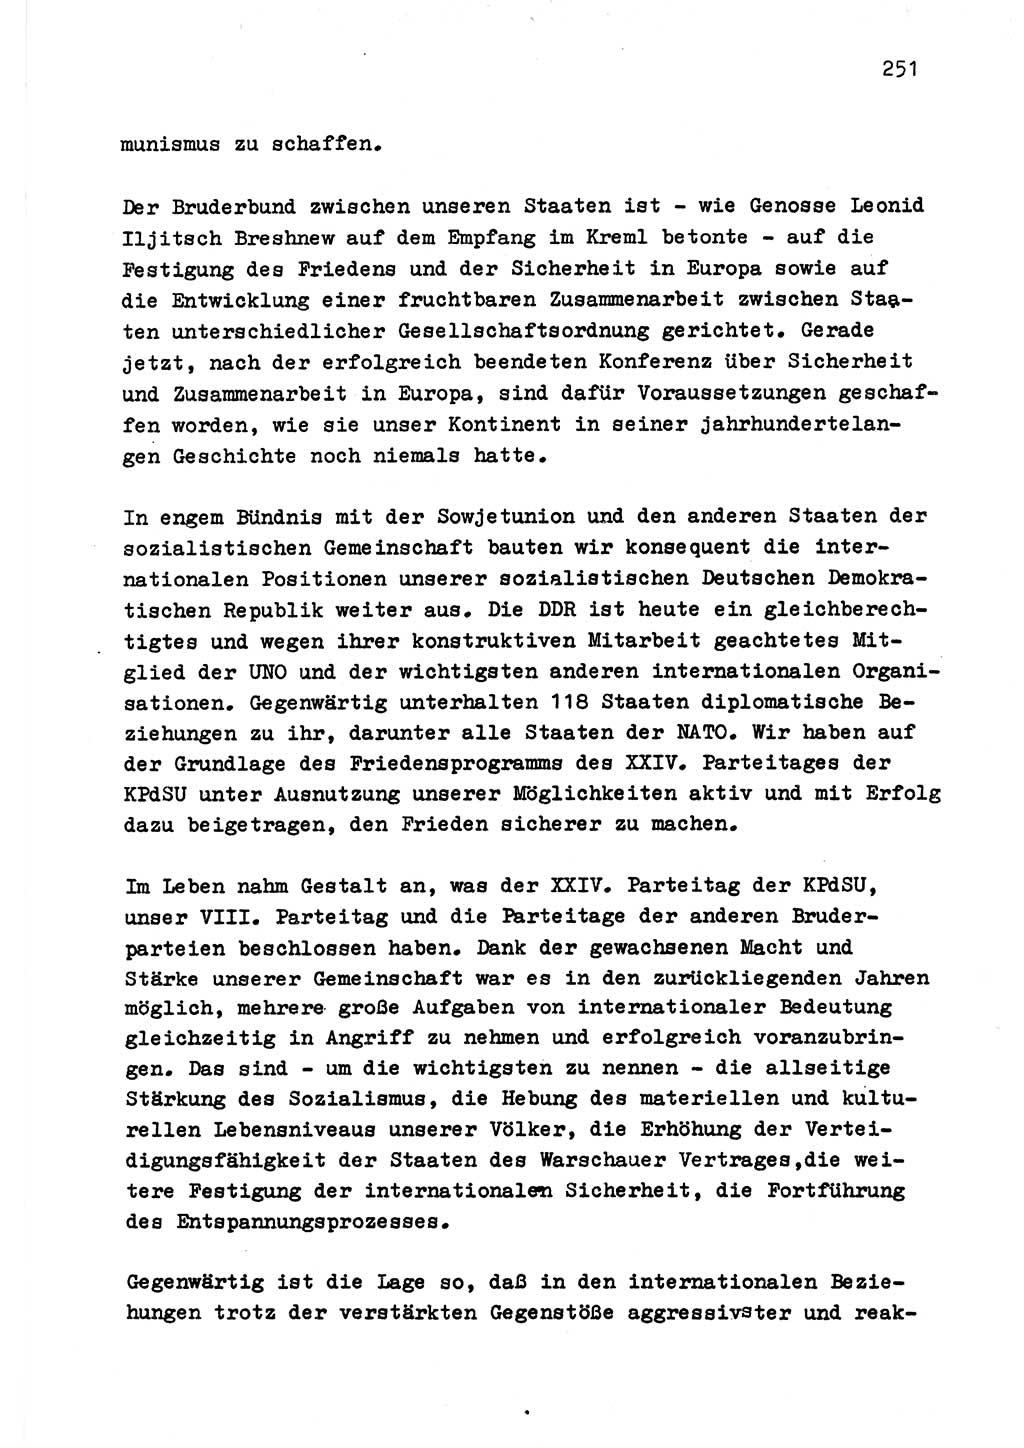 Zu Fragen der Parteiarbeit [Sozialistische Einheitspartei Deutschlands (SED) Deutsche Demokratische Republik (DDR)] 1979, Seite 251 (Fr. PA SED DDR 1979, S. 251)